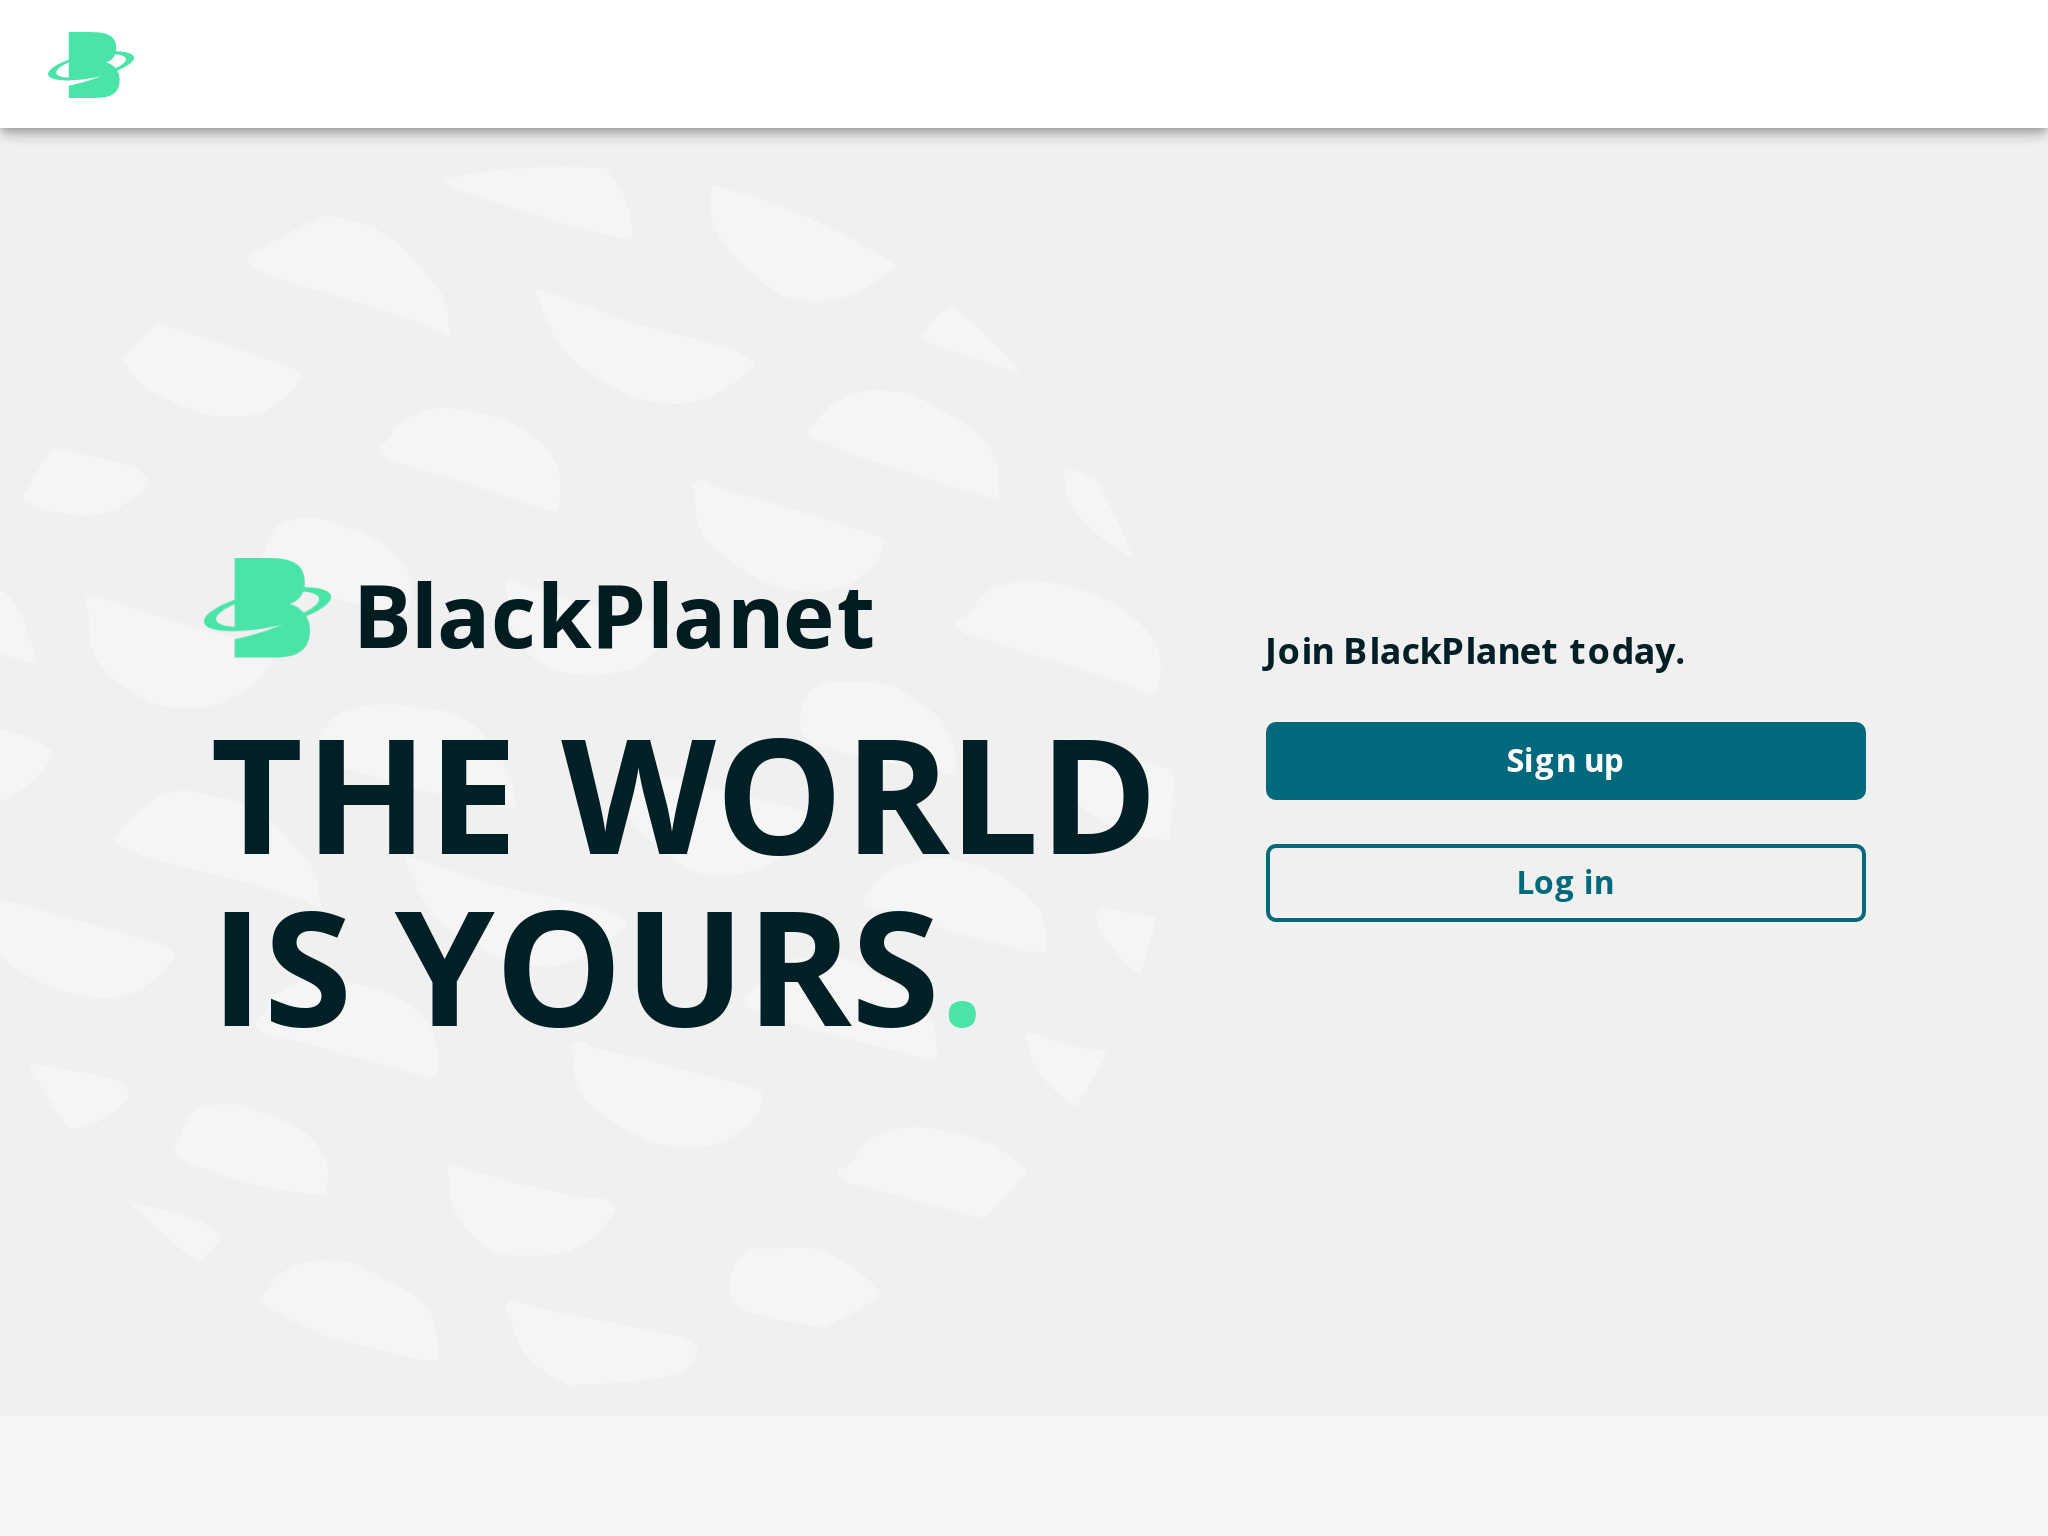 Blackplanet-recensie – Is het het waard?